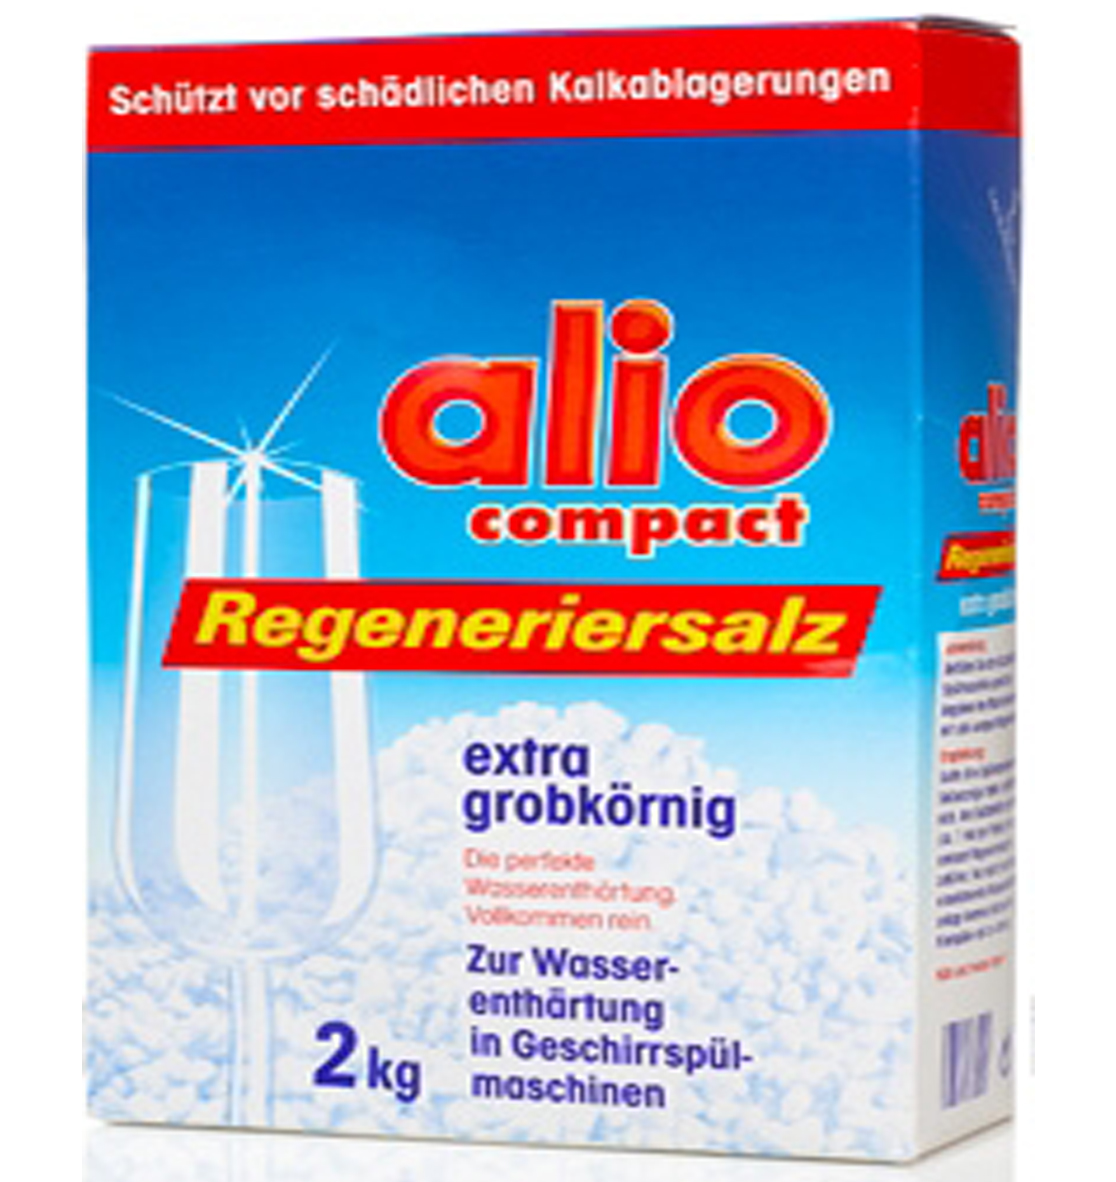 Muối rửa bát alio compact regenerier salz loại 2kg